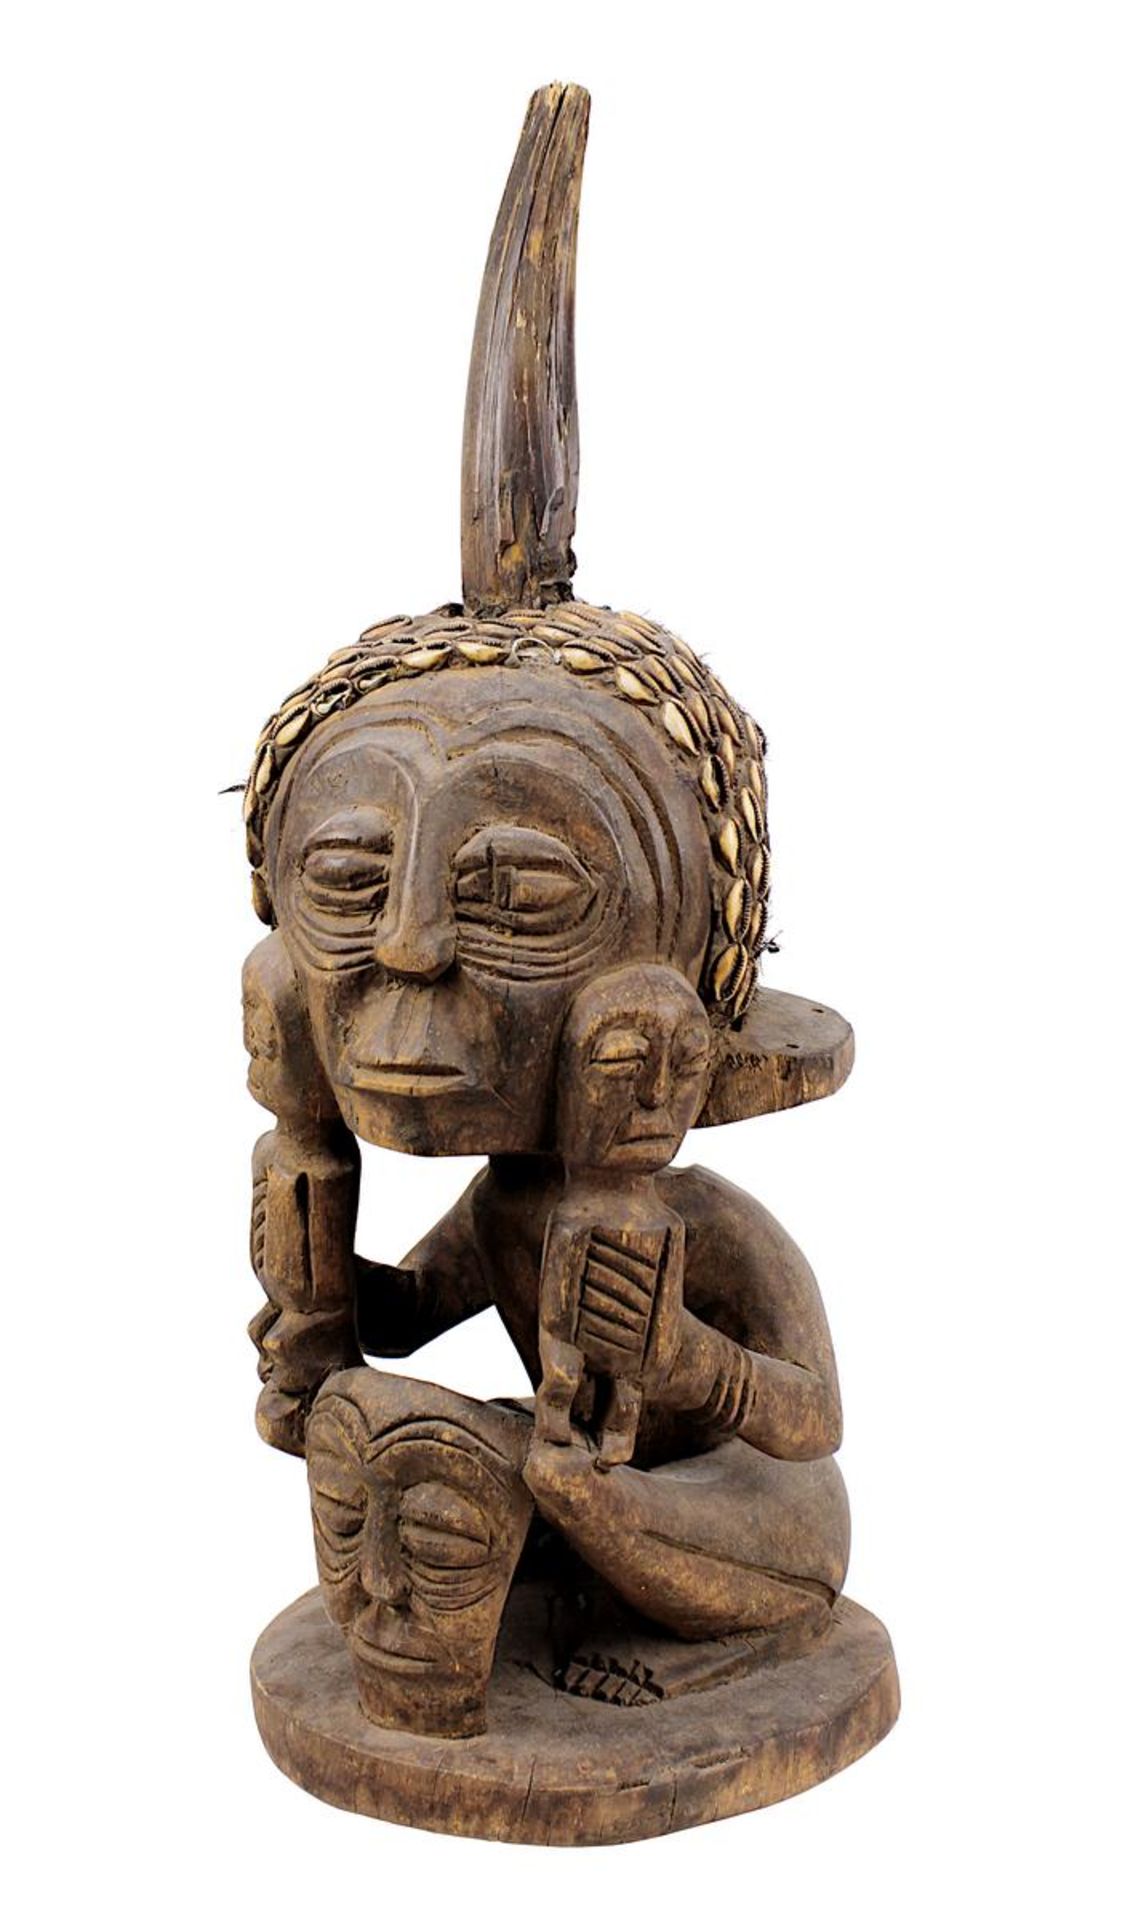 Dekorative Fetisch-Figur, Variante einer nkisi-Figur, wohl Luba, D. R. Kongo, schweres Holz